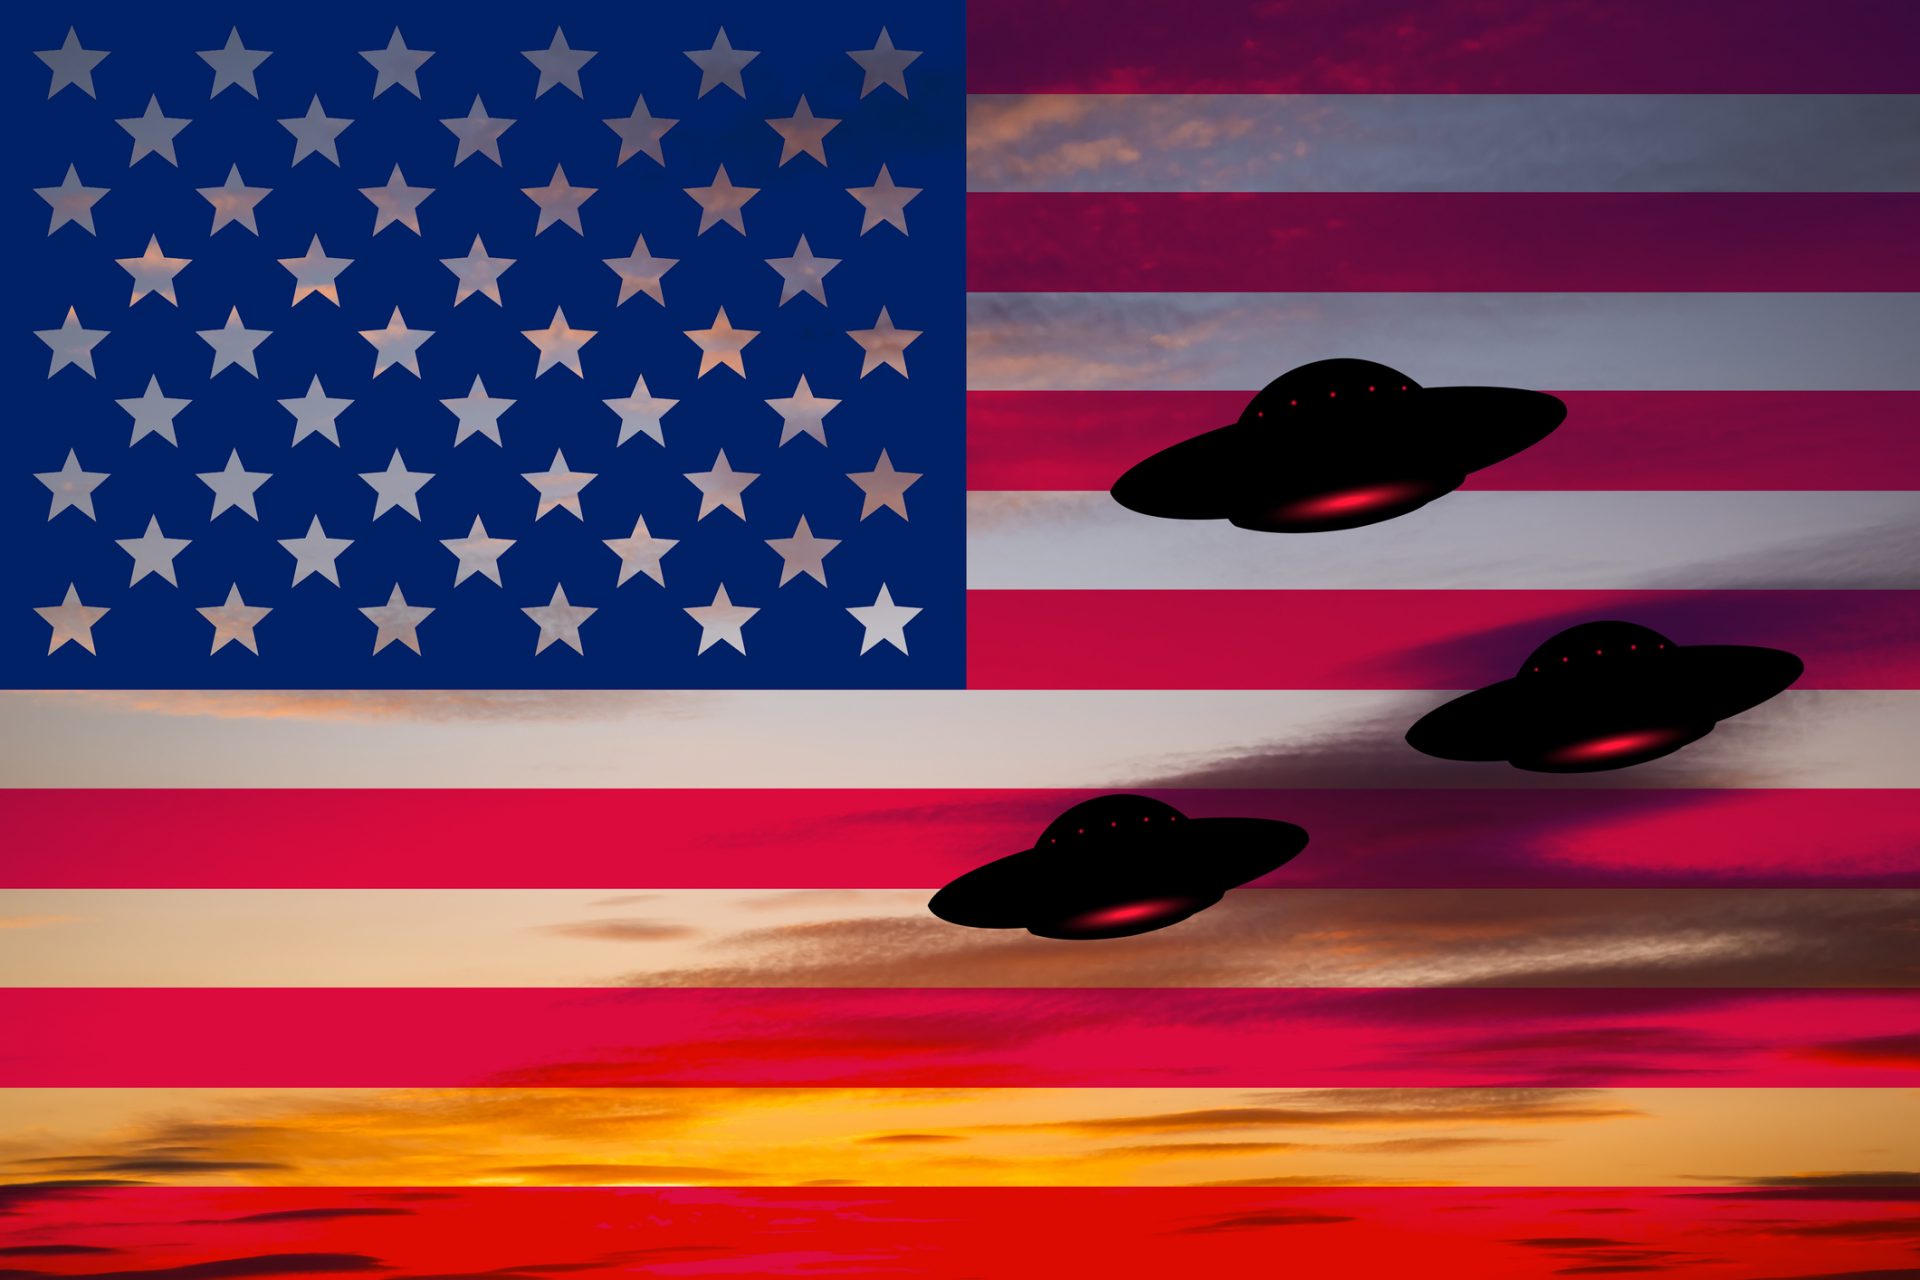 Gli USA non nascondono prove dell'esistenza di vita aliena: l'ultimo rapporto del Pentagono sugli UFO